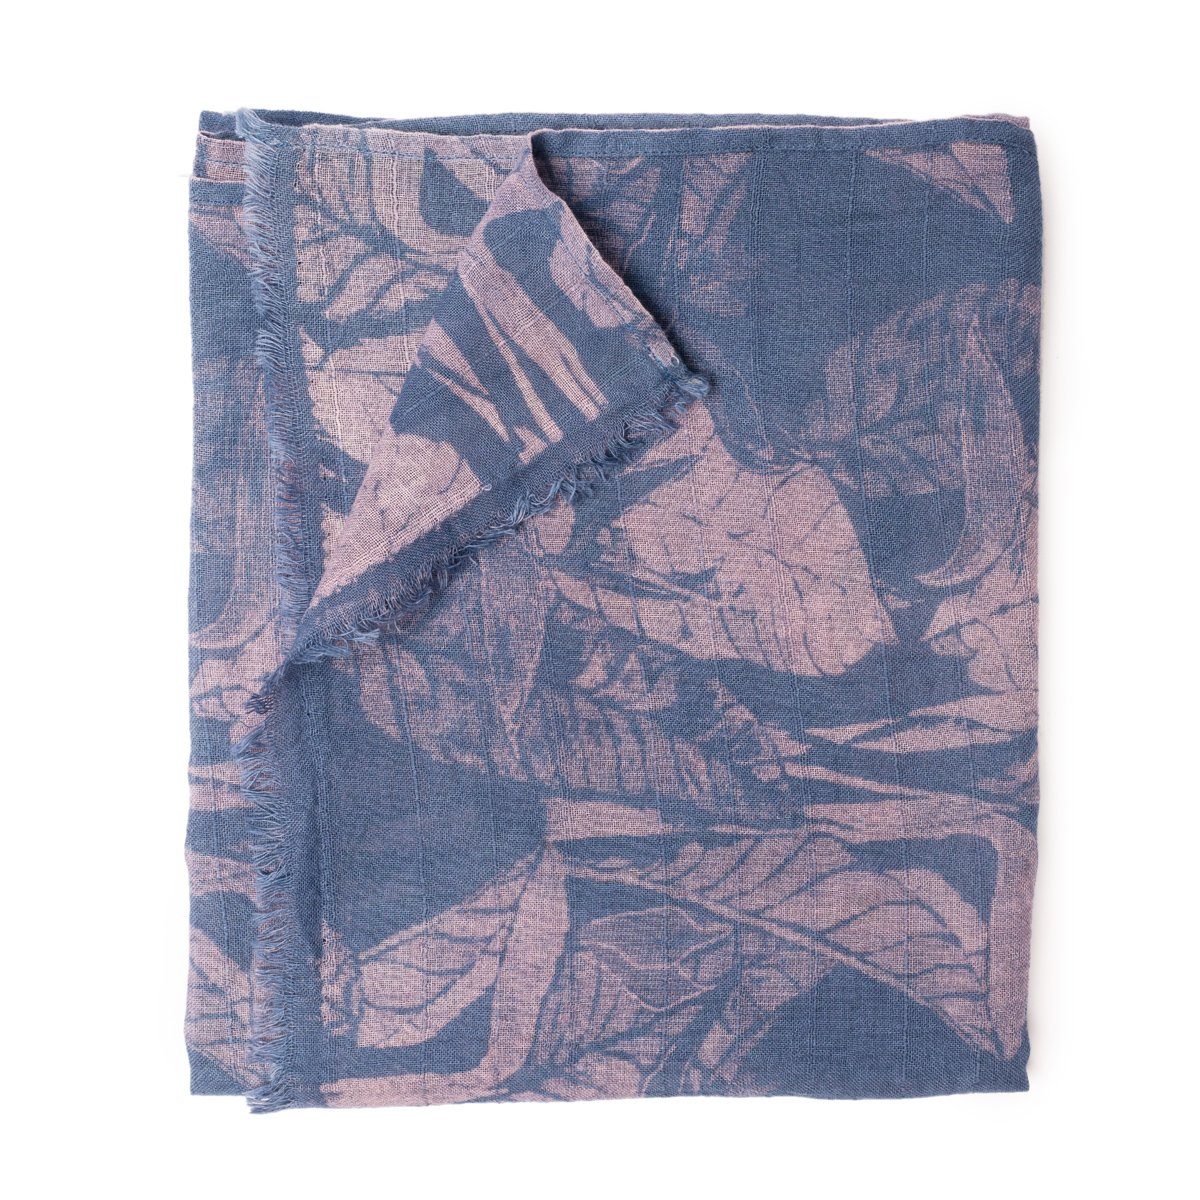 PANASIAM Halstuch elegantes Schaltuch auch als Schultertuch Schal oder Stola tragbar, in schönen farbigen Designs mit kleinen Fransen aus Baumwolle dunkelblau